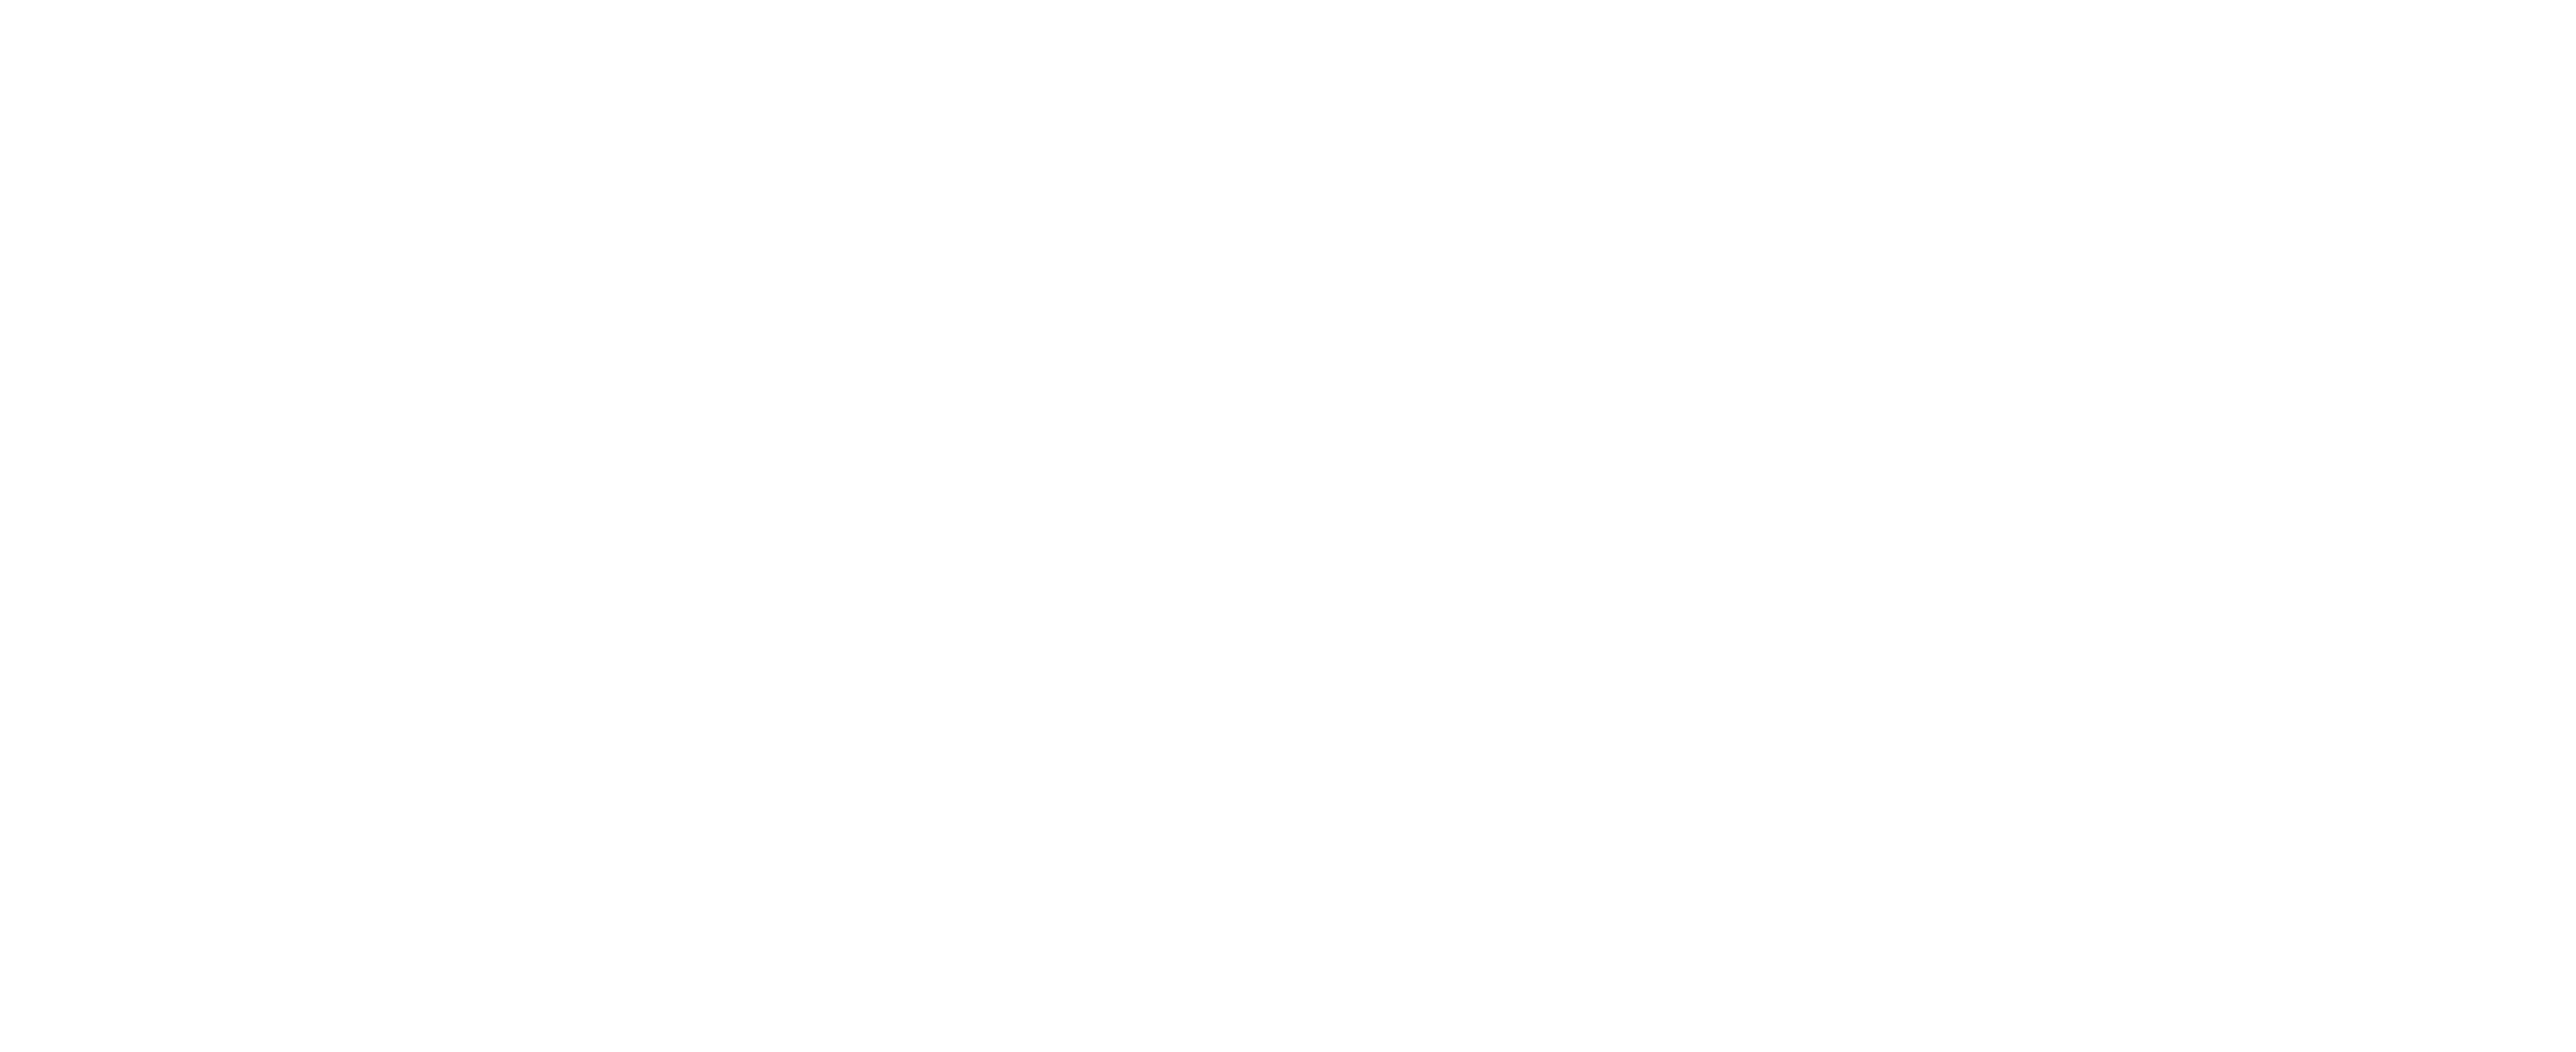 Ciclofficina Popolare "Rimessa in Movimento"